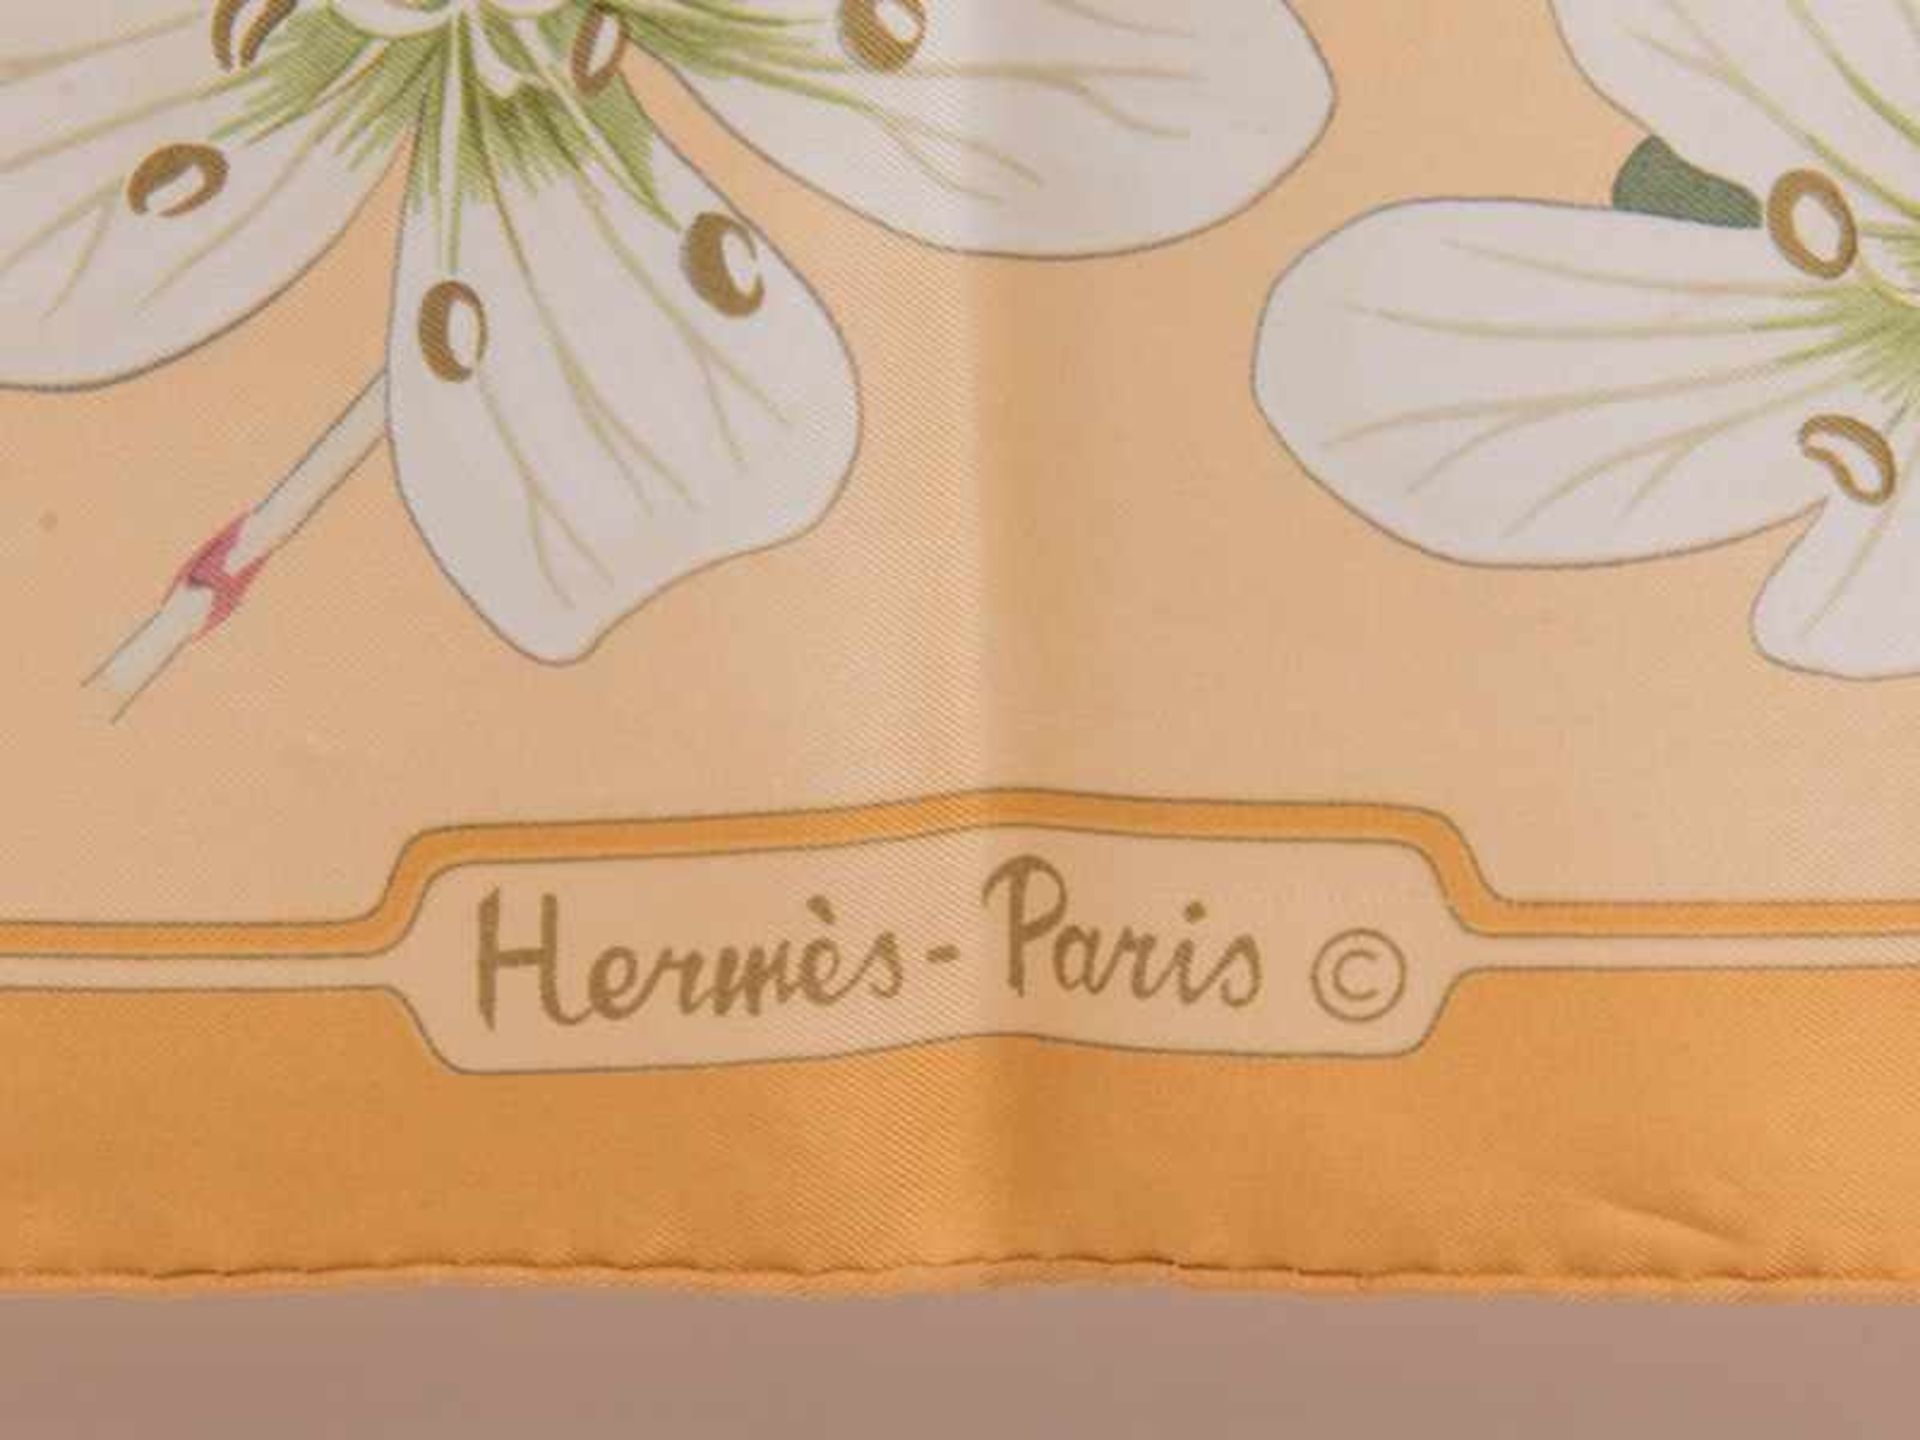 Vintage-Seidentuch von Hermès, Dekorentwurf von Niki Goulandris; Paris, 20. Jh. 100% Seide. - Bild 2 aus 3